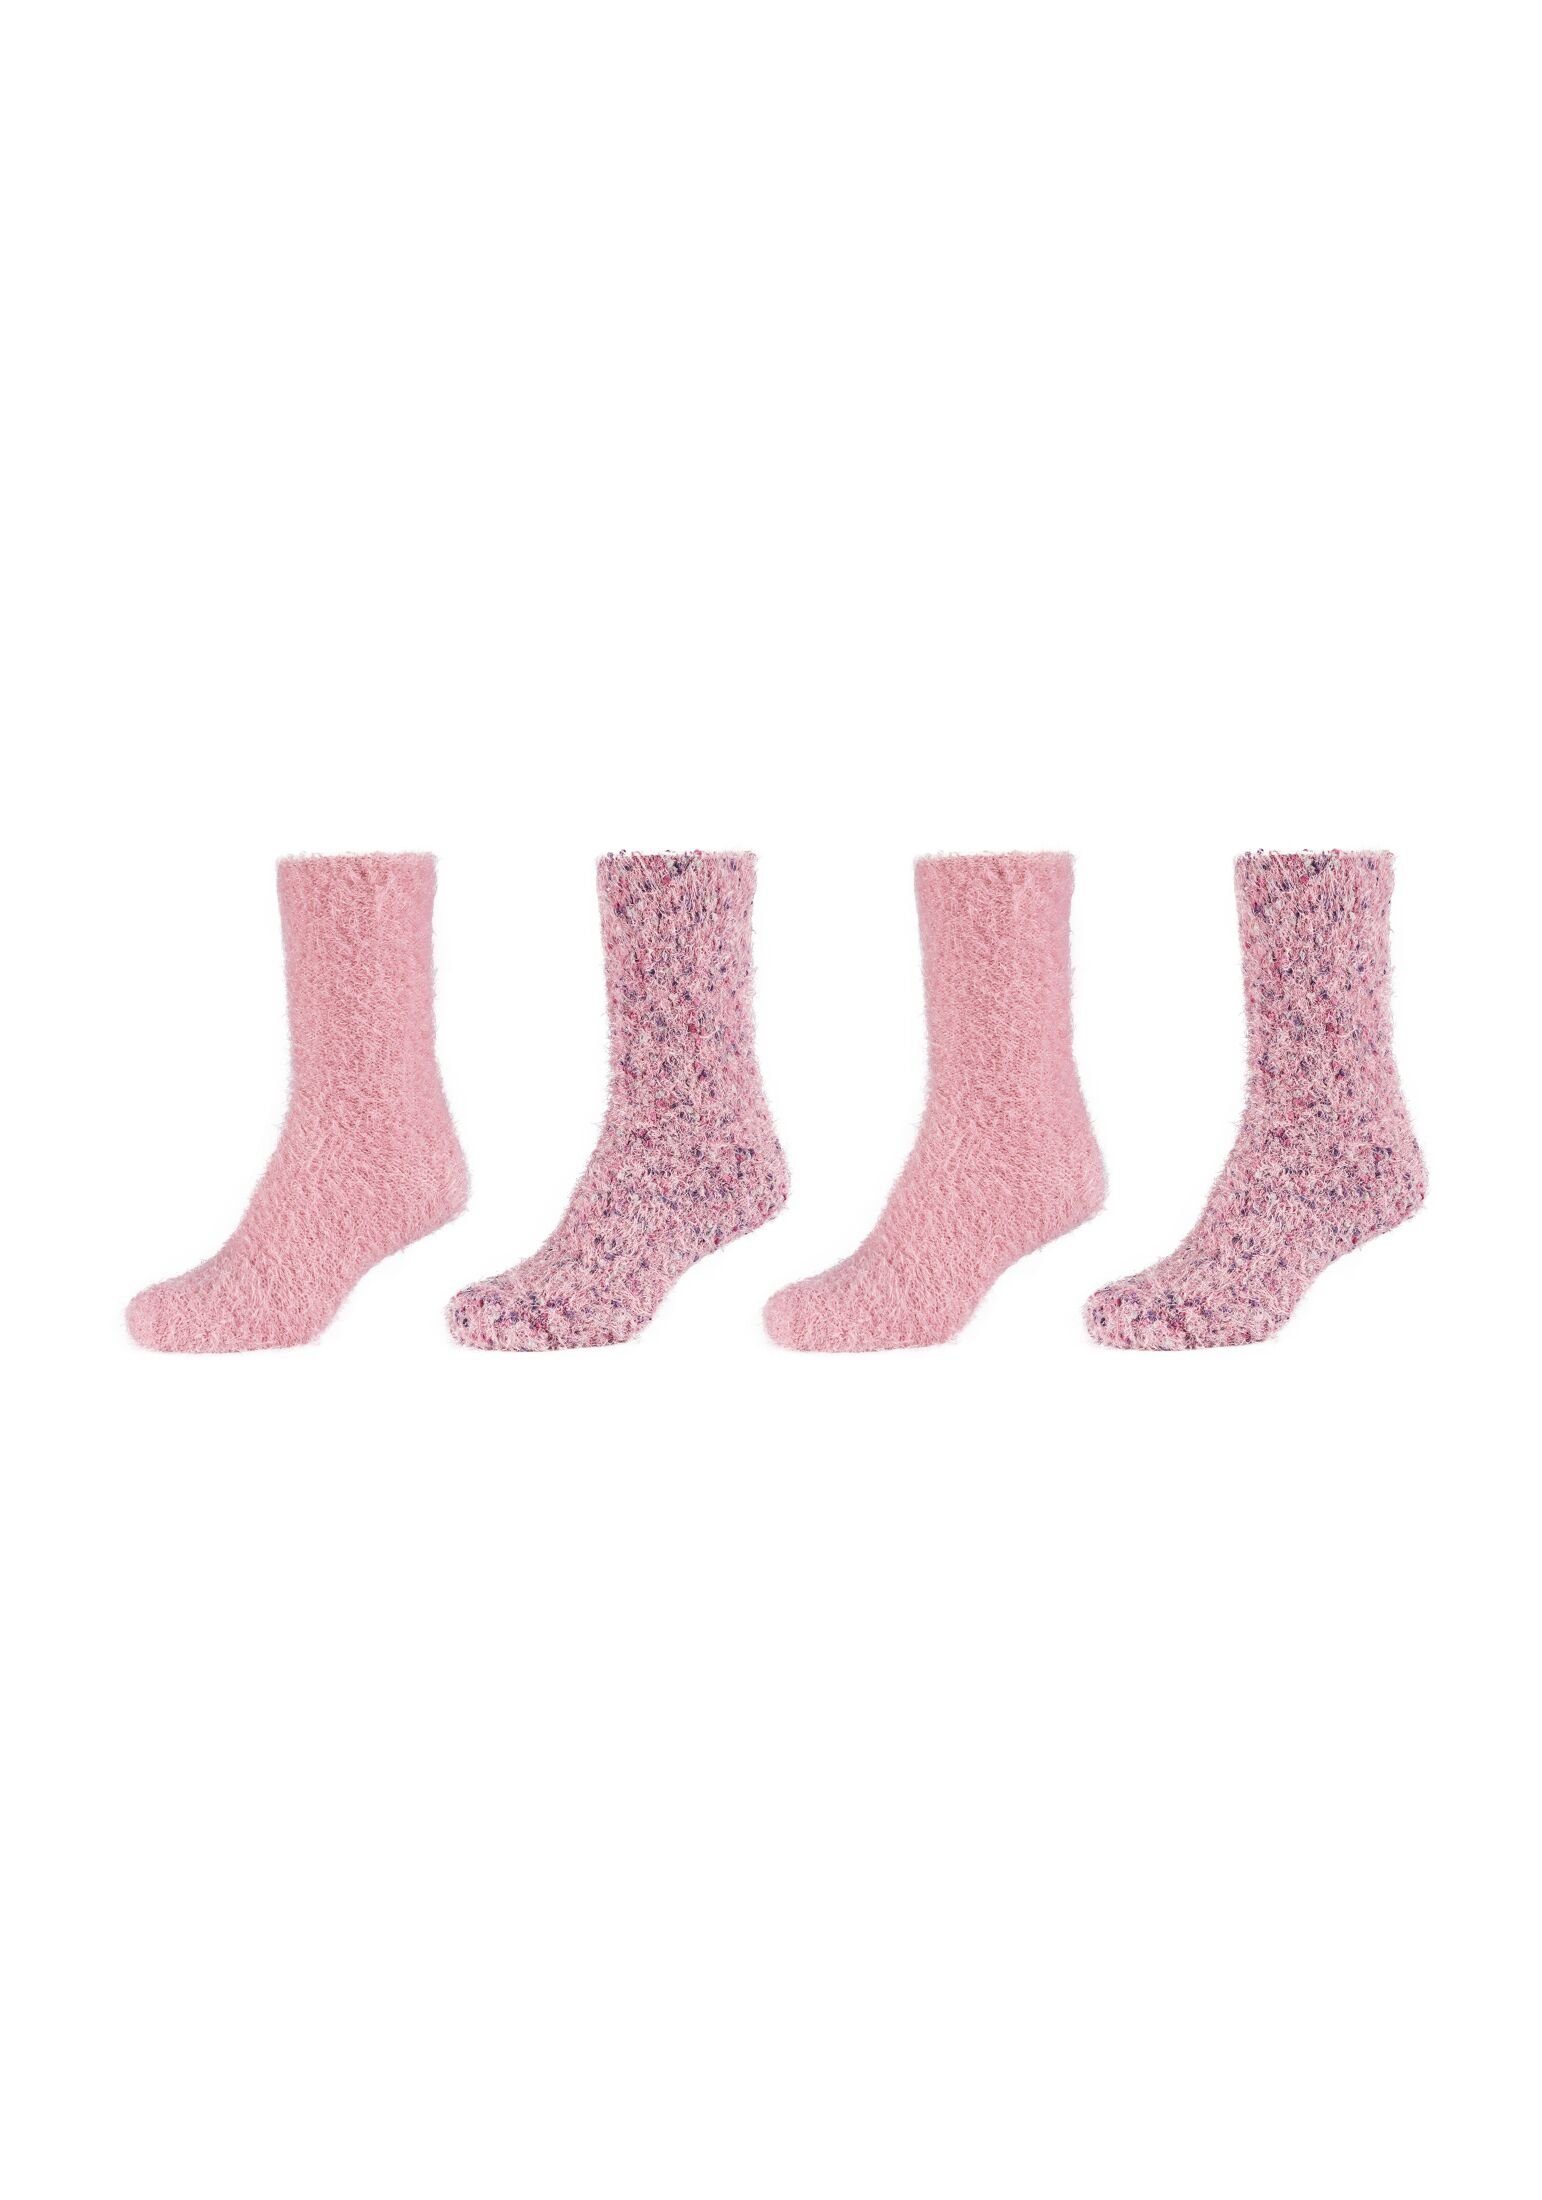 Socken Camano dusty rose 4er Pack Socken